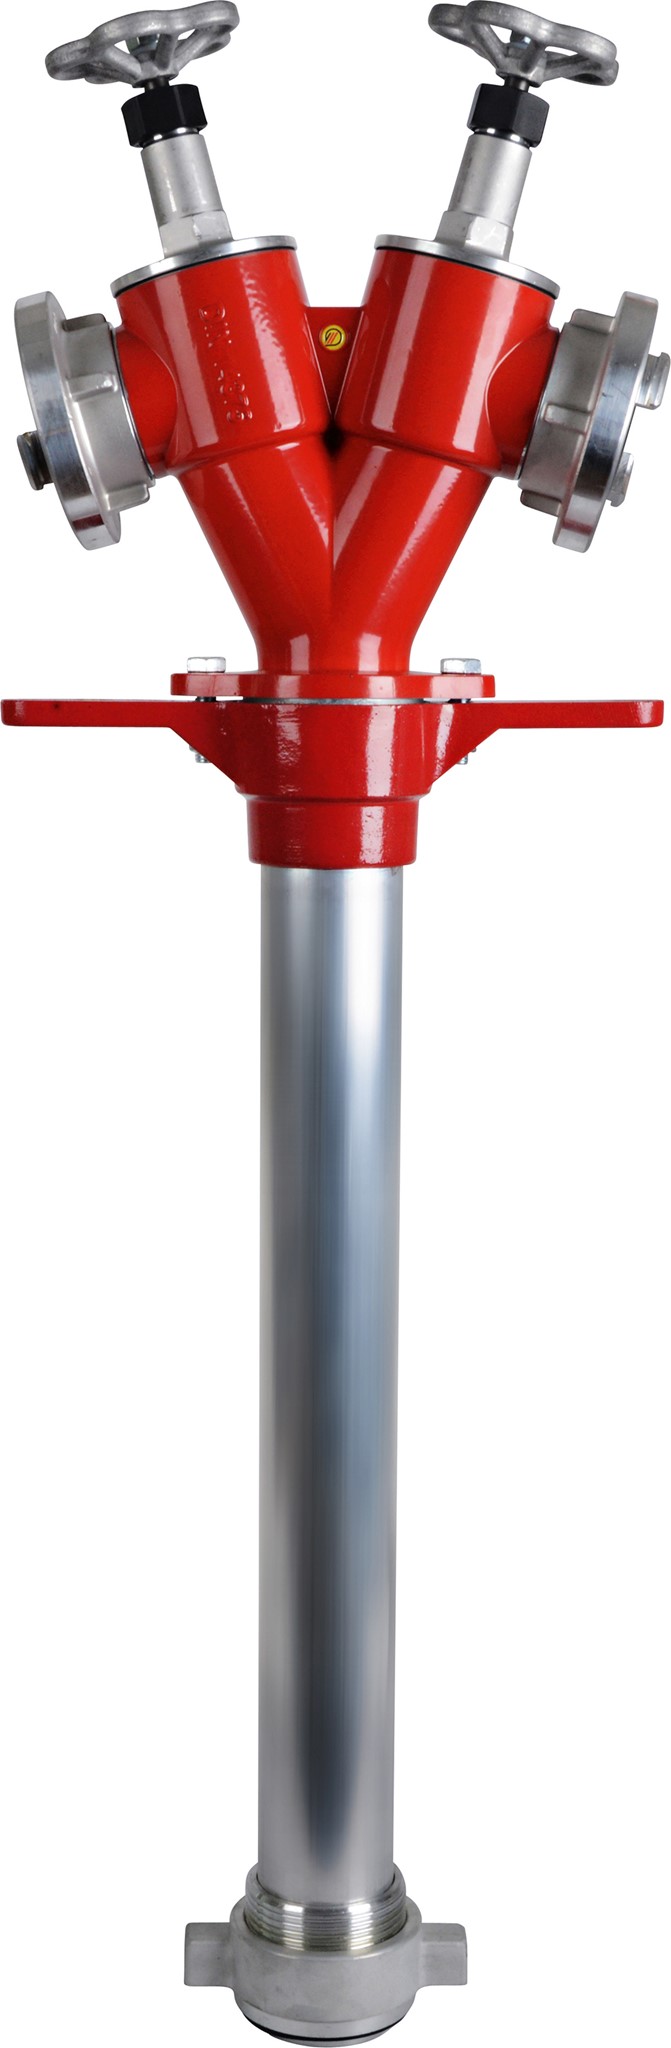 Image de Hydrantenstandrohr für Unterflurhydranten DIN 3221, DN 80, 2xStorz C mit Absperrung